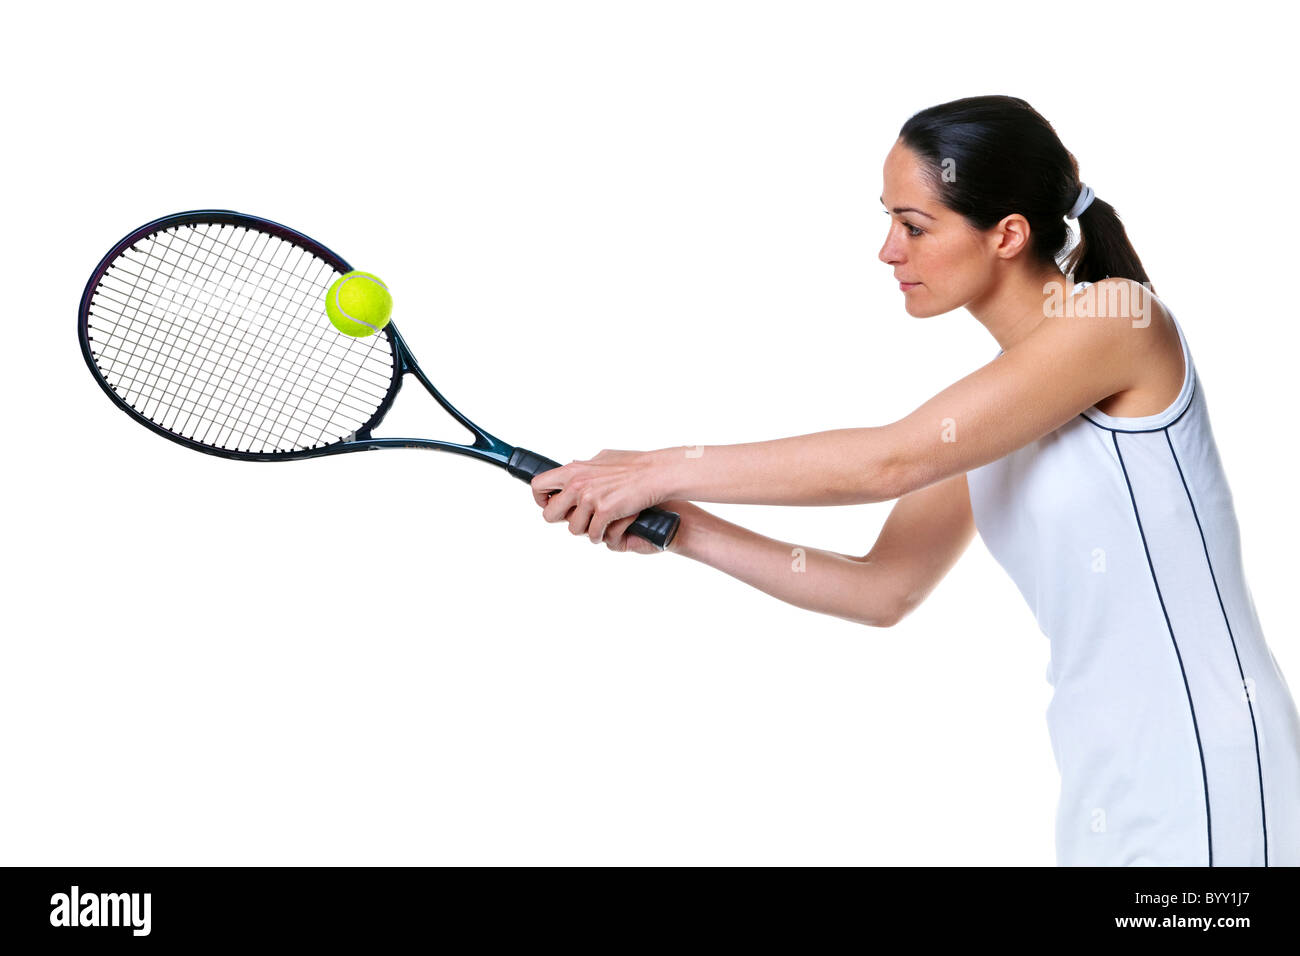 Foto von einer Frau spielen ein Tennis Vorhand Schuss, isoliert auf weiss. Stockfoto